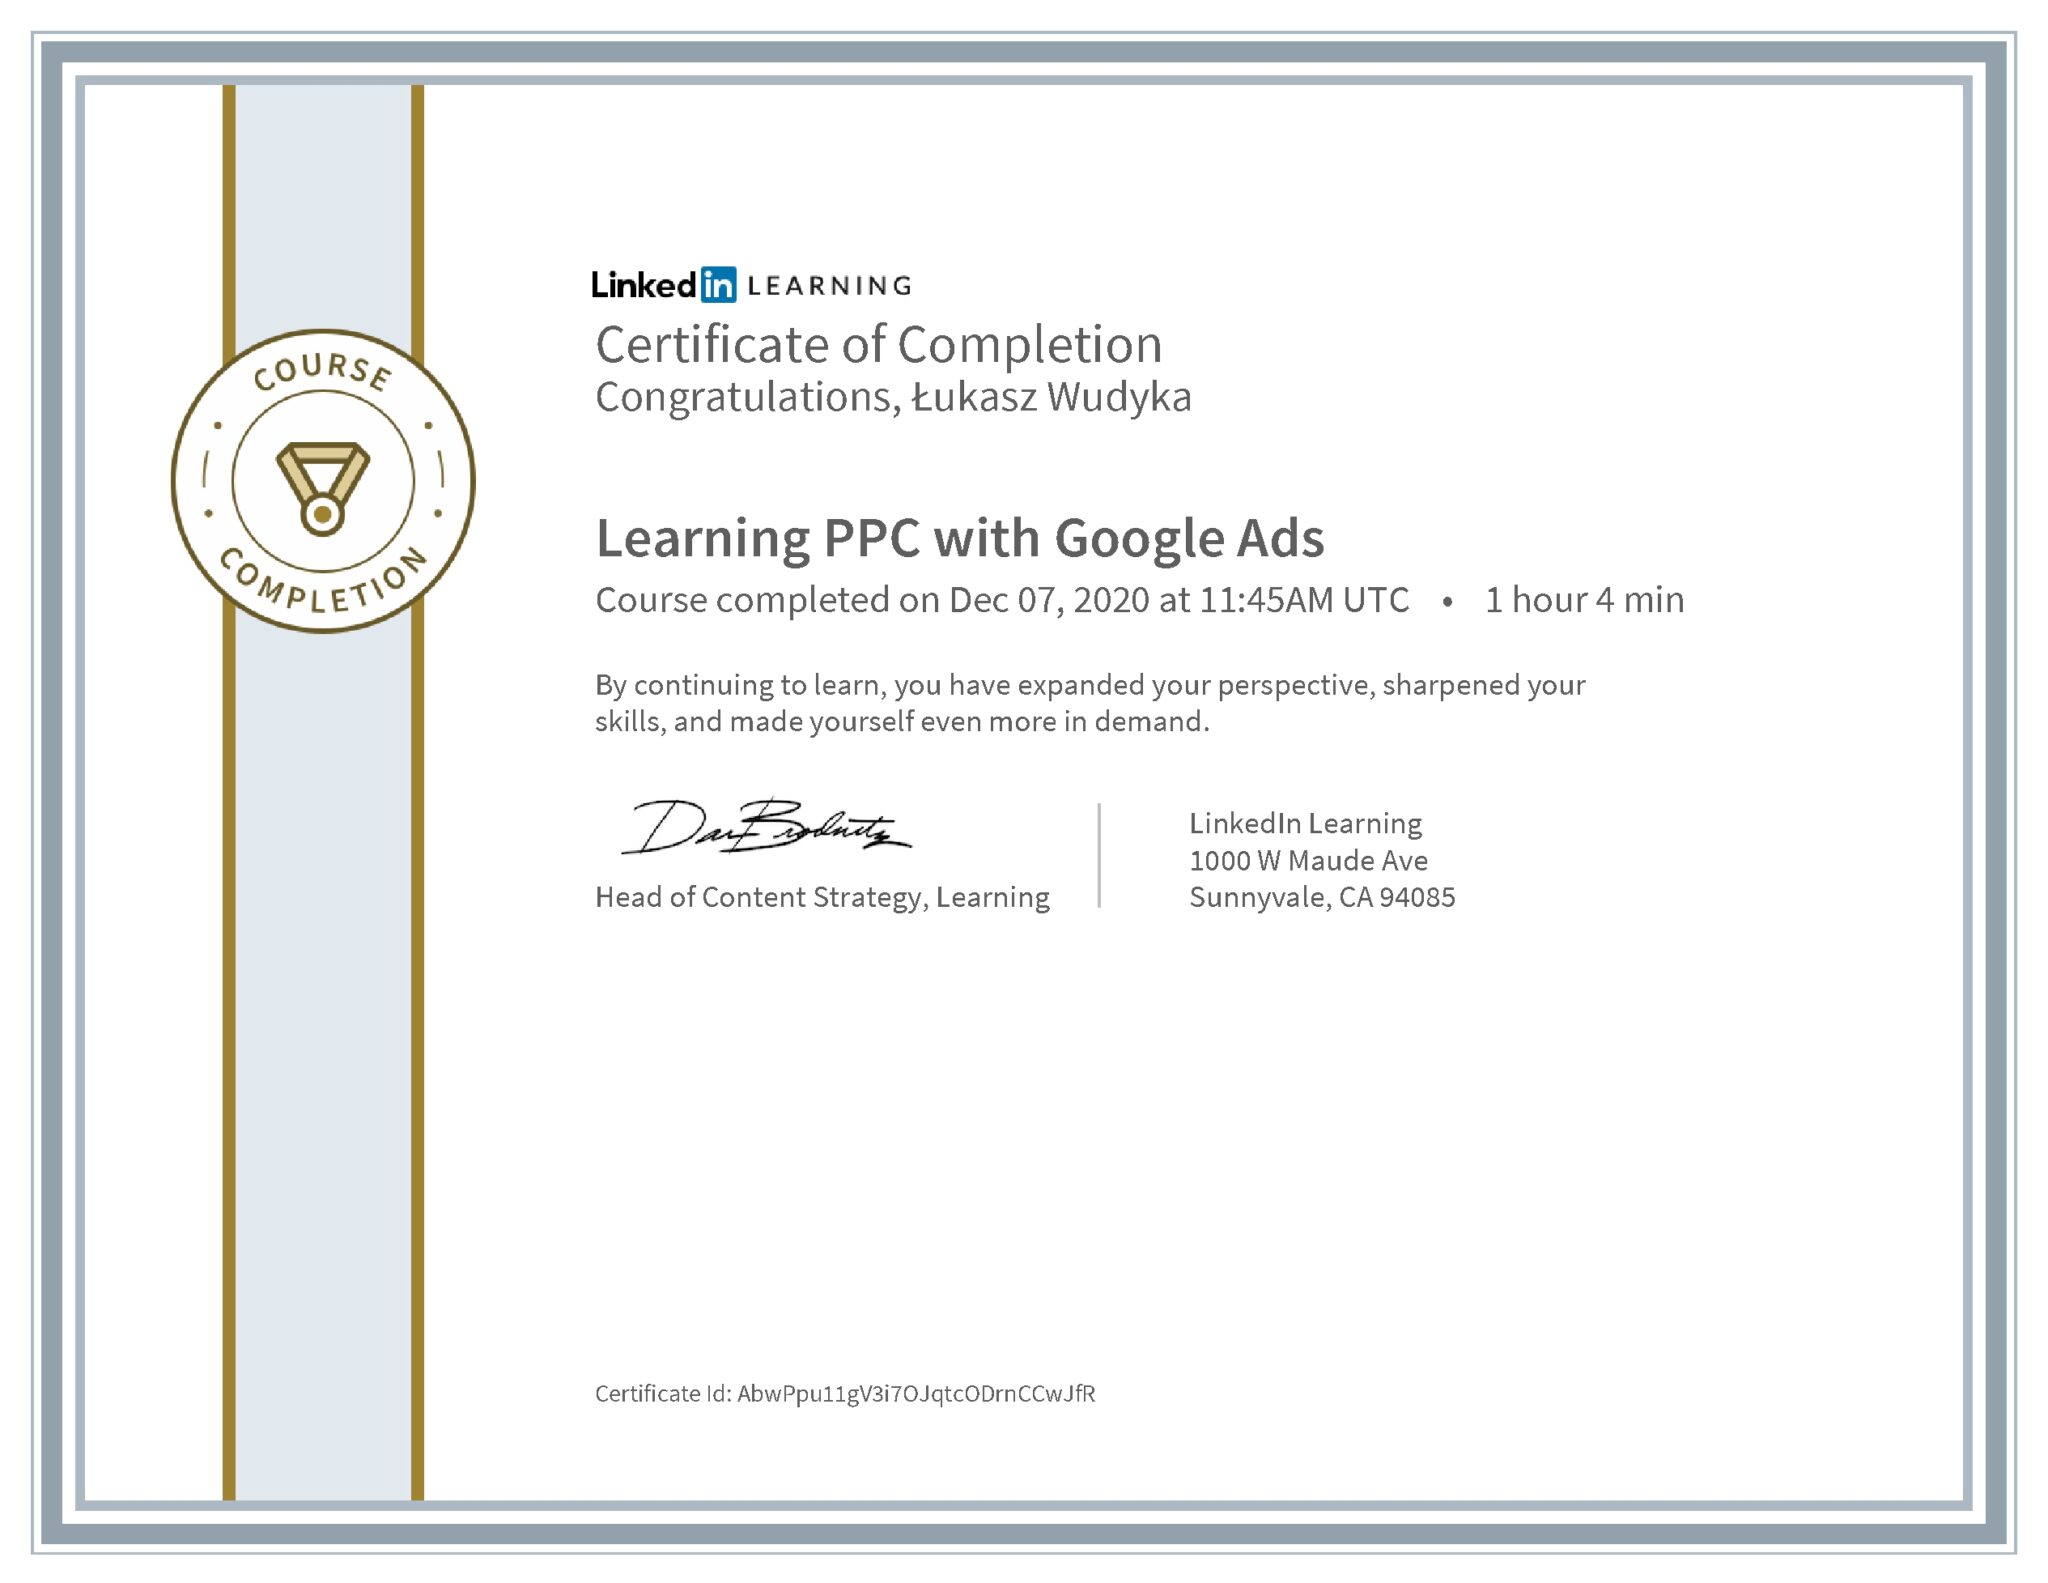 Łukasz Wudyka certyfikat LinkedIn Learning PPC with Google Ads